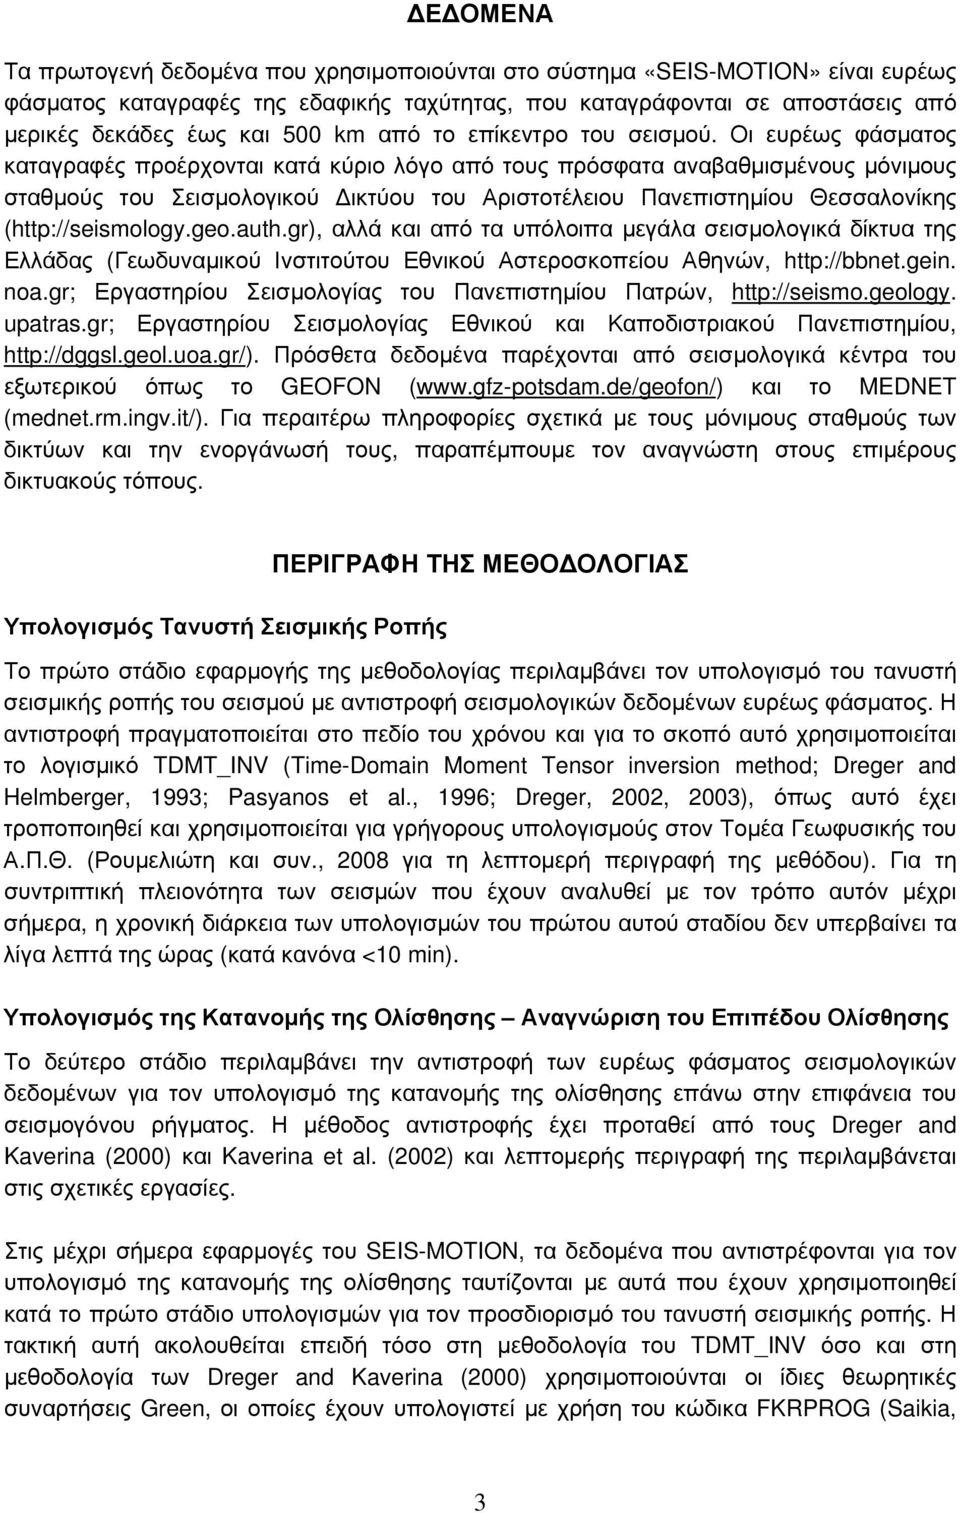 Οι ευρέως φάσματος καταγραφές προέρχονται κατά κύριο λόγο από τους πρόσφατα αναβαθμισμένους μόνιμους σταθμούς του Σεισμολογικού Δικτύου του Αριστοτέλειου Πανεπιστημίου Θεσσαλονίκης (http://seismology.